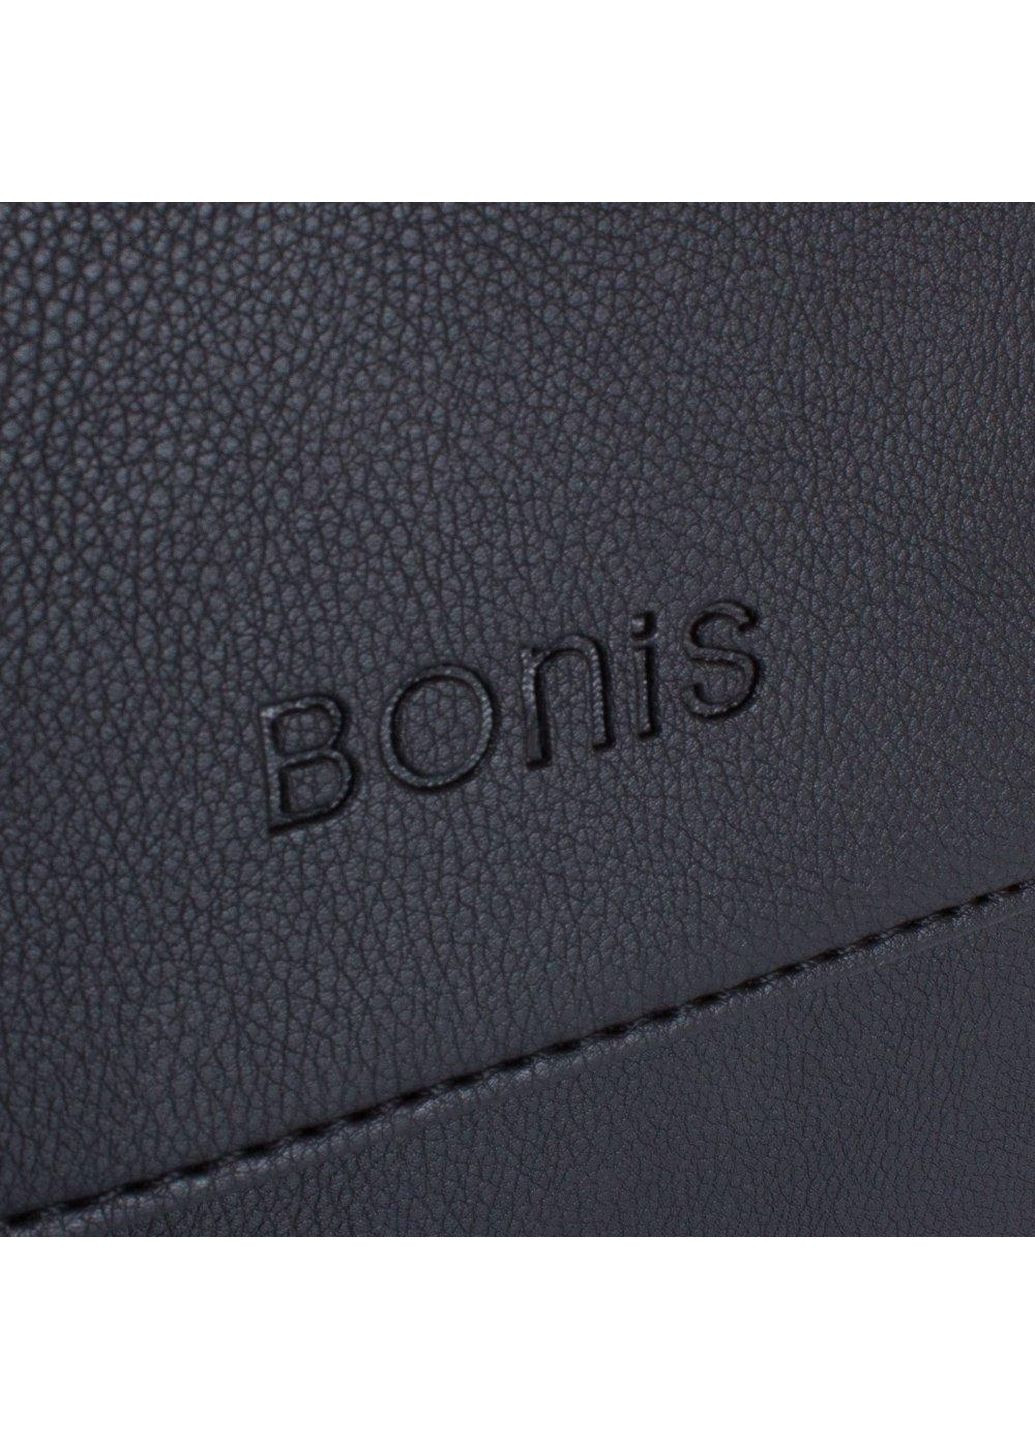 Борсетка мужская Bonis (288187203)